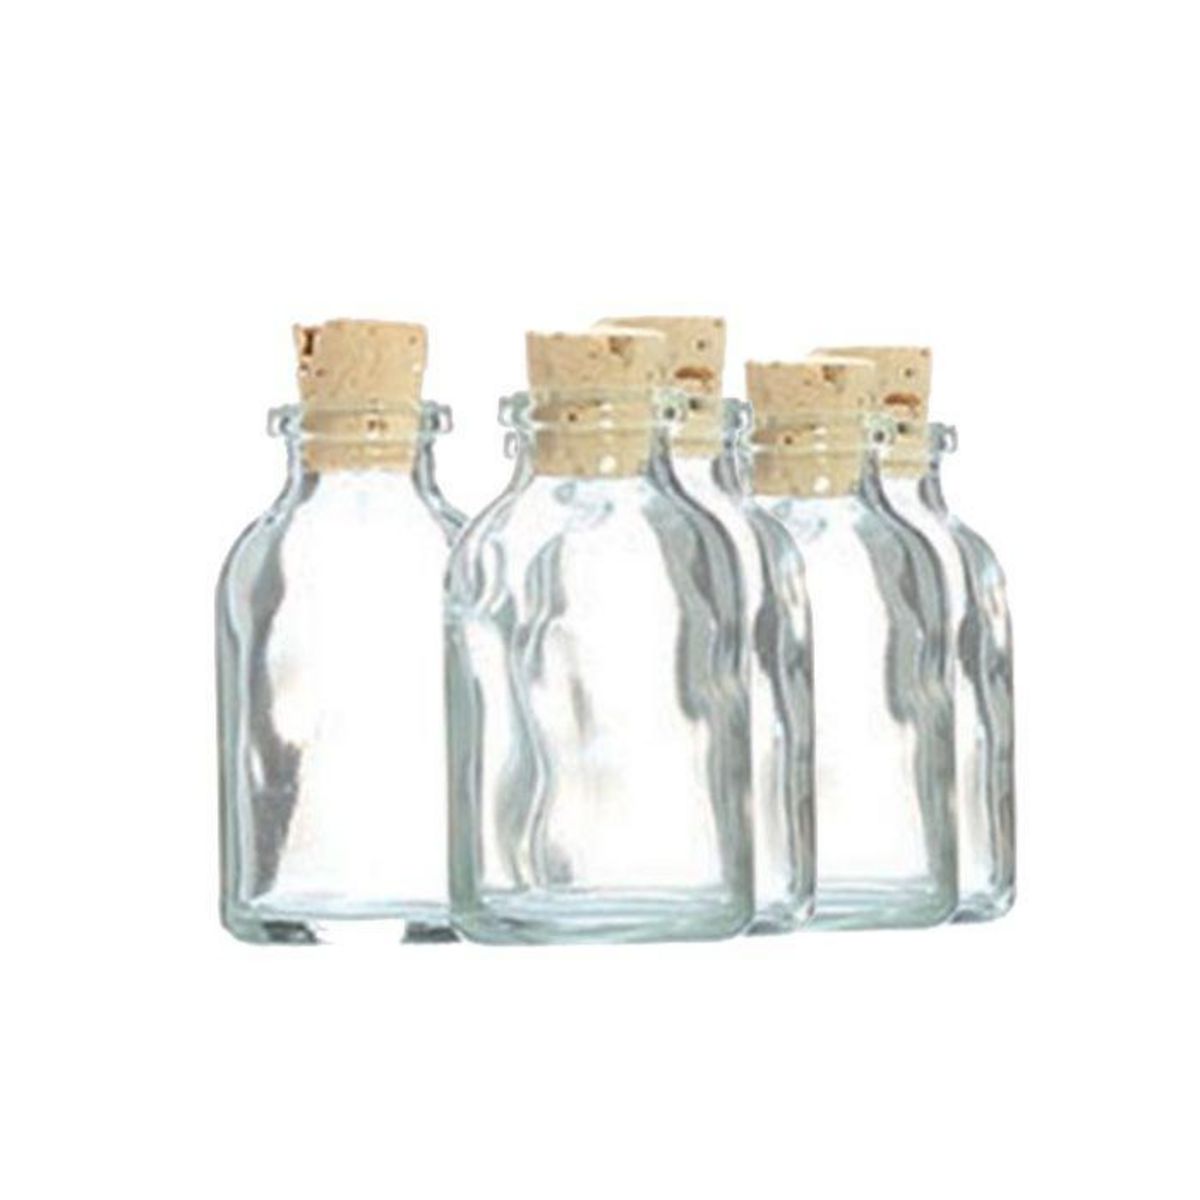 Graine créative 5 mini bouteilles en verre 6 cm avec bouchon liège